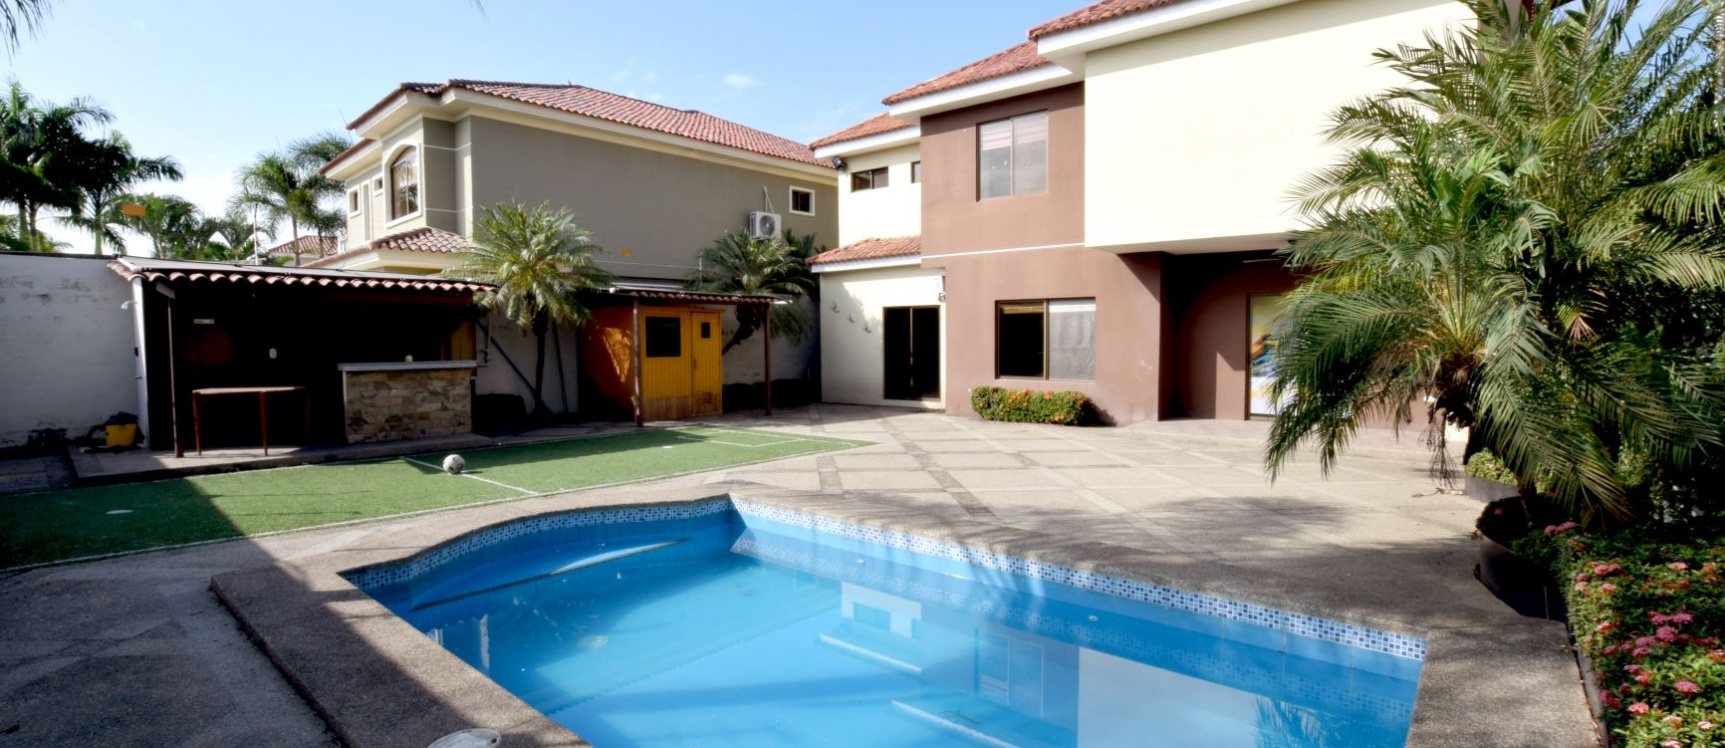 GeoBienes - Casa en alquiler en Laguna del Sol, Vía Samborondón - Plusvalia Guayaquil Casas de venta y alquiler Inmobiliaria Ecuador